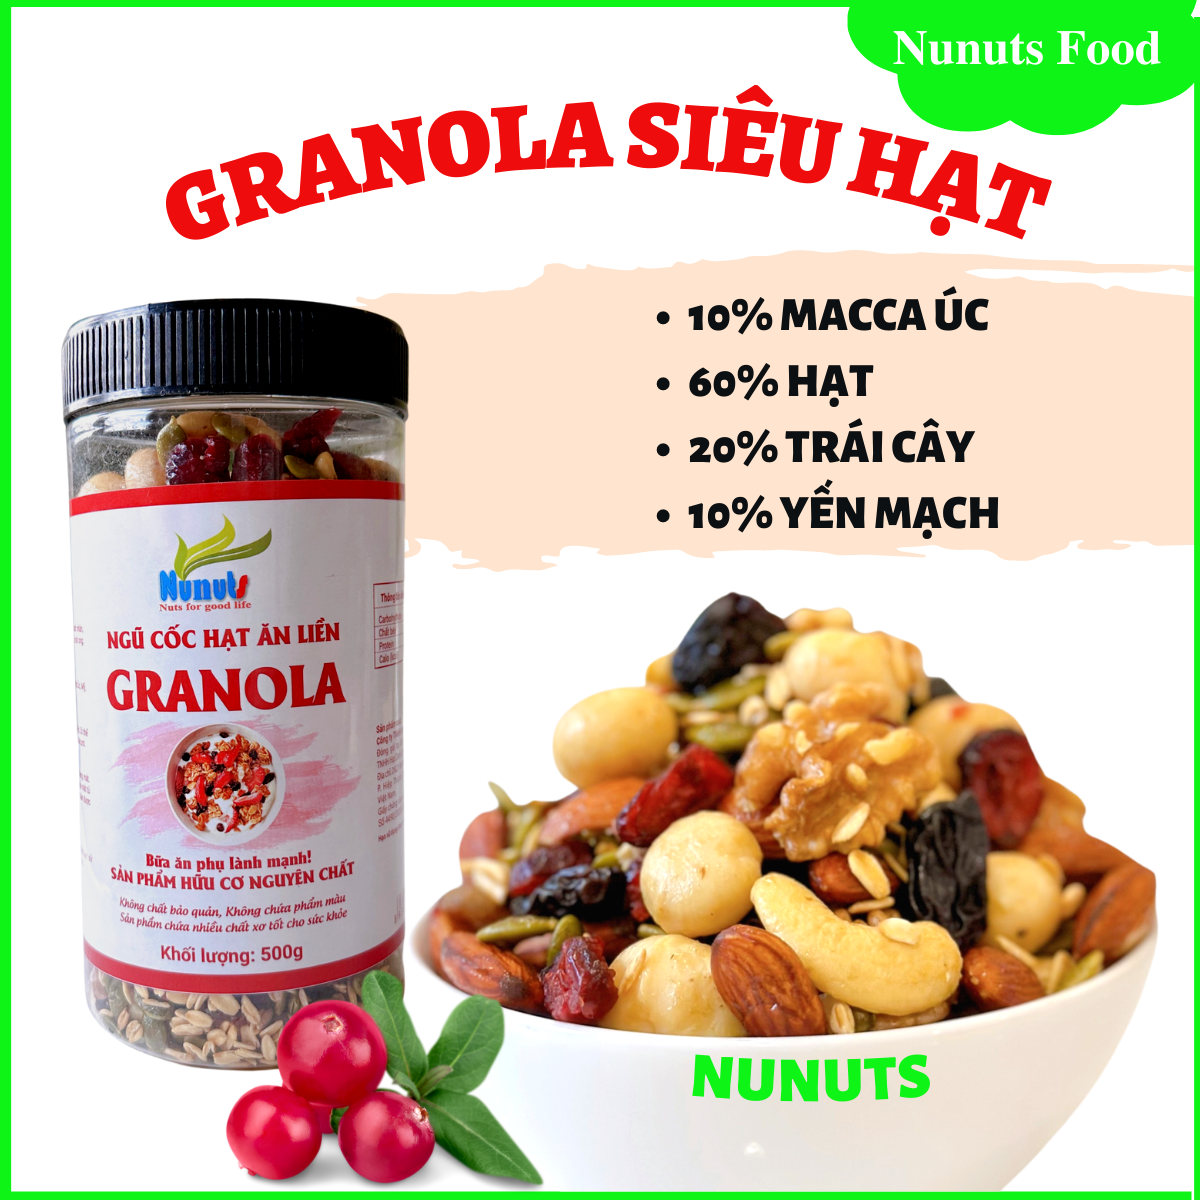 Granola siêu hạt macca úc Nunuts với 10% yến mạch là ngũ cốc ăn liền dành cho bà bầu, người muốn tăng giảm cân nặng